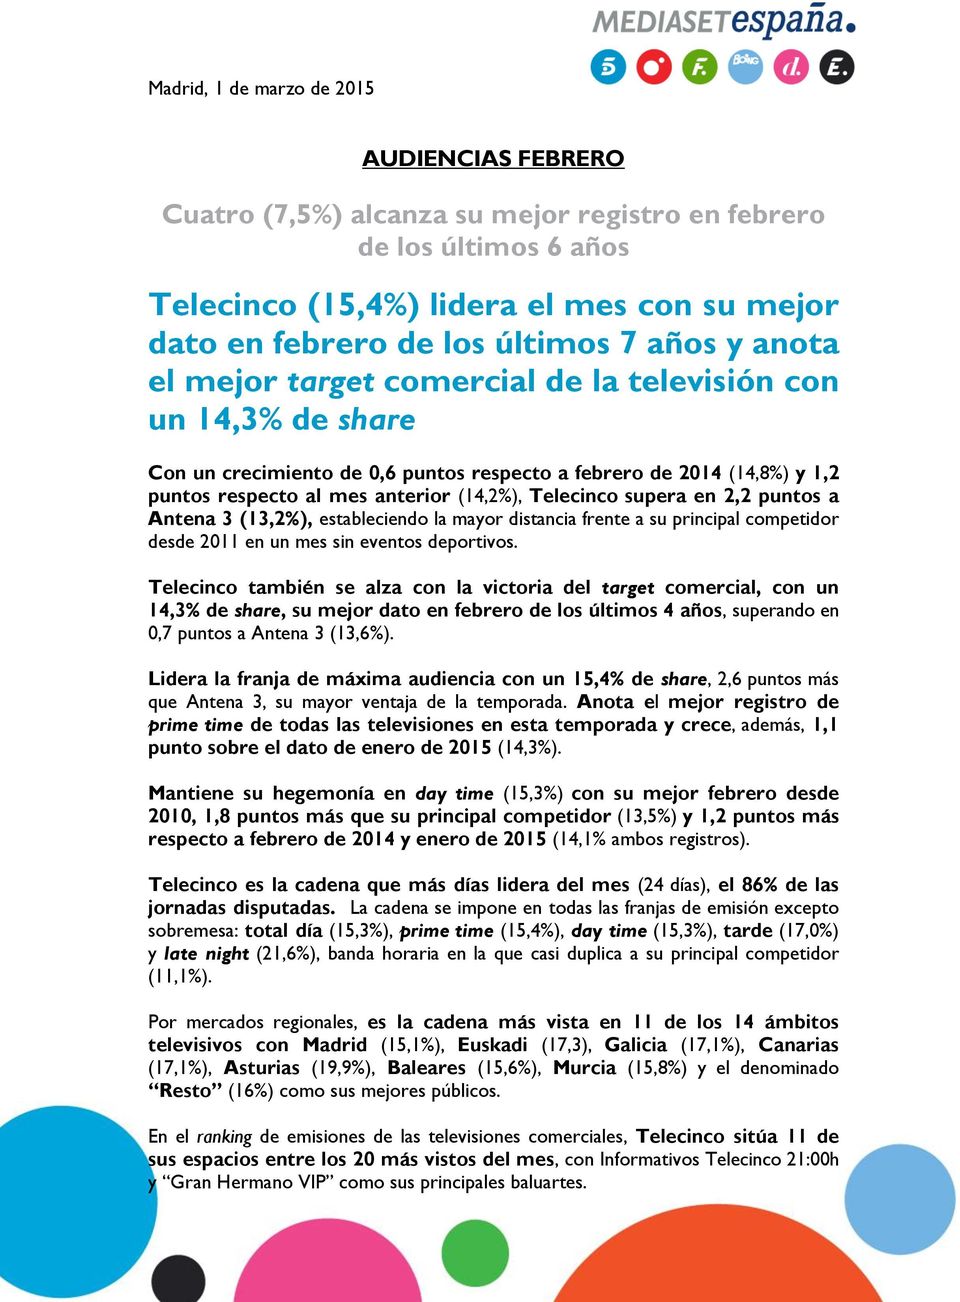 Telecinco supera en 2,2 puntos a Antena 3 (13,2%), estableciendo la mayor distancia frente a su principal competidor desde 2011 en un mes sin eventos deportivos.